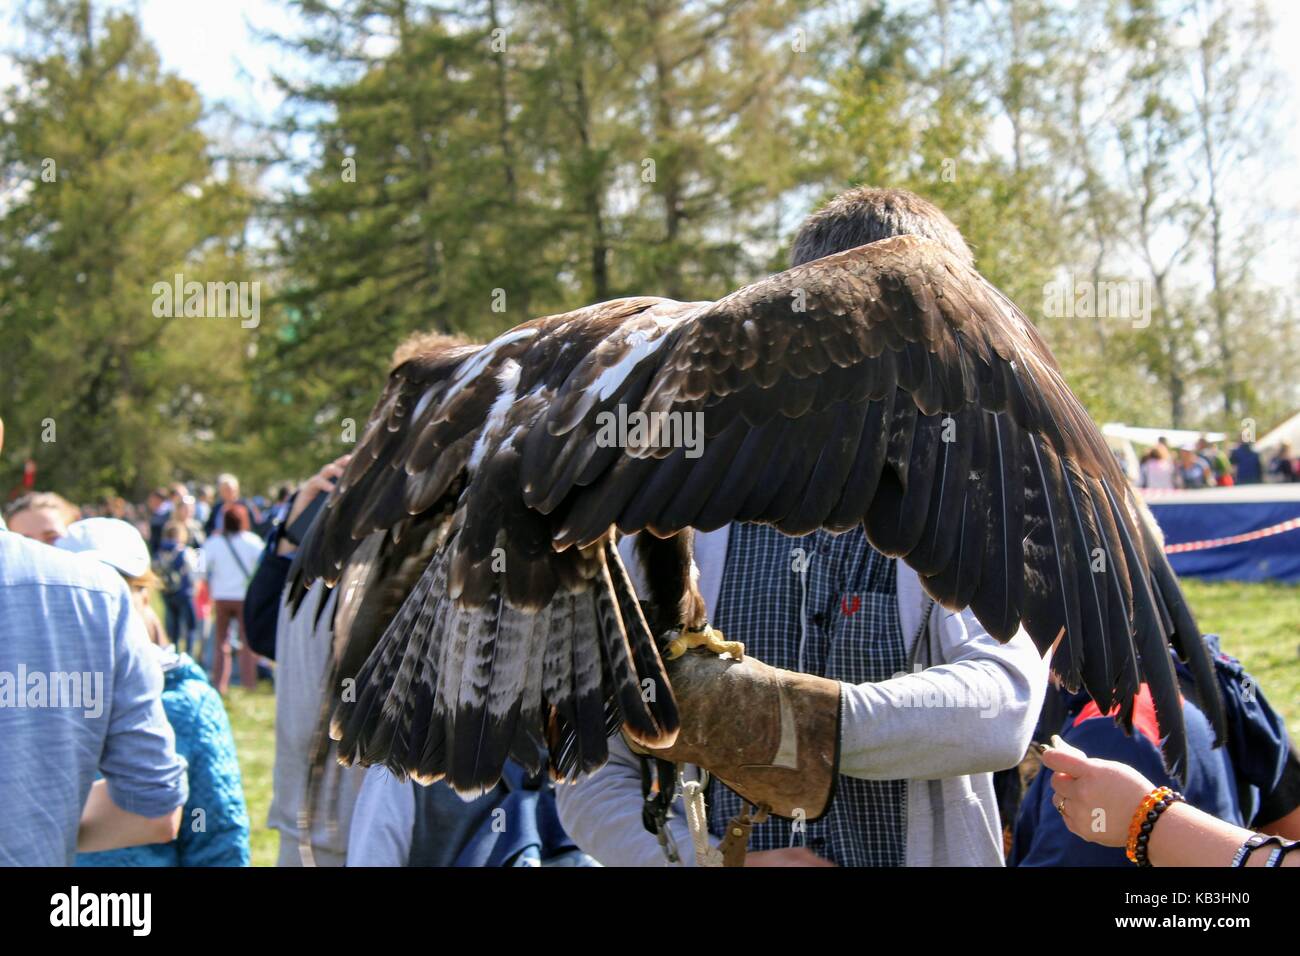 16 settembre 2017 di Tula, Russia - Il militare internazionale e festival storici 'kulikovo campo': eagle seduta sul guanto di falconeria. Foto Stock